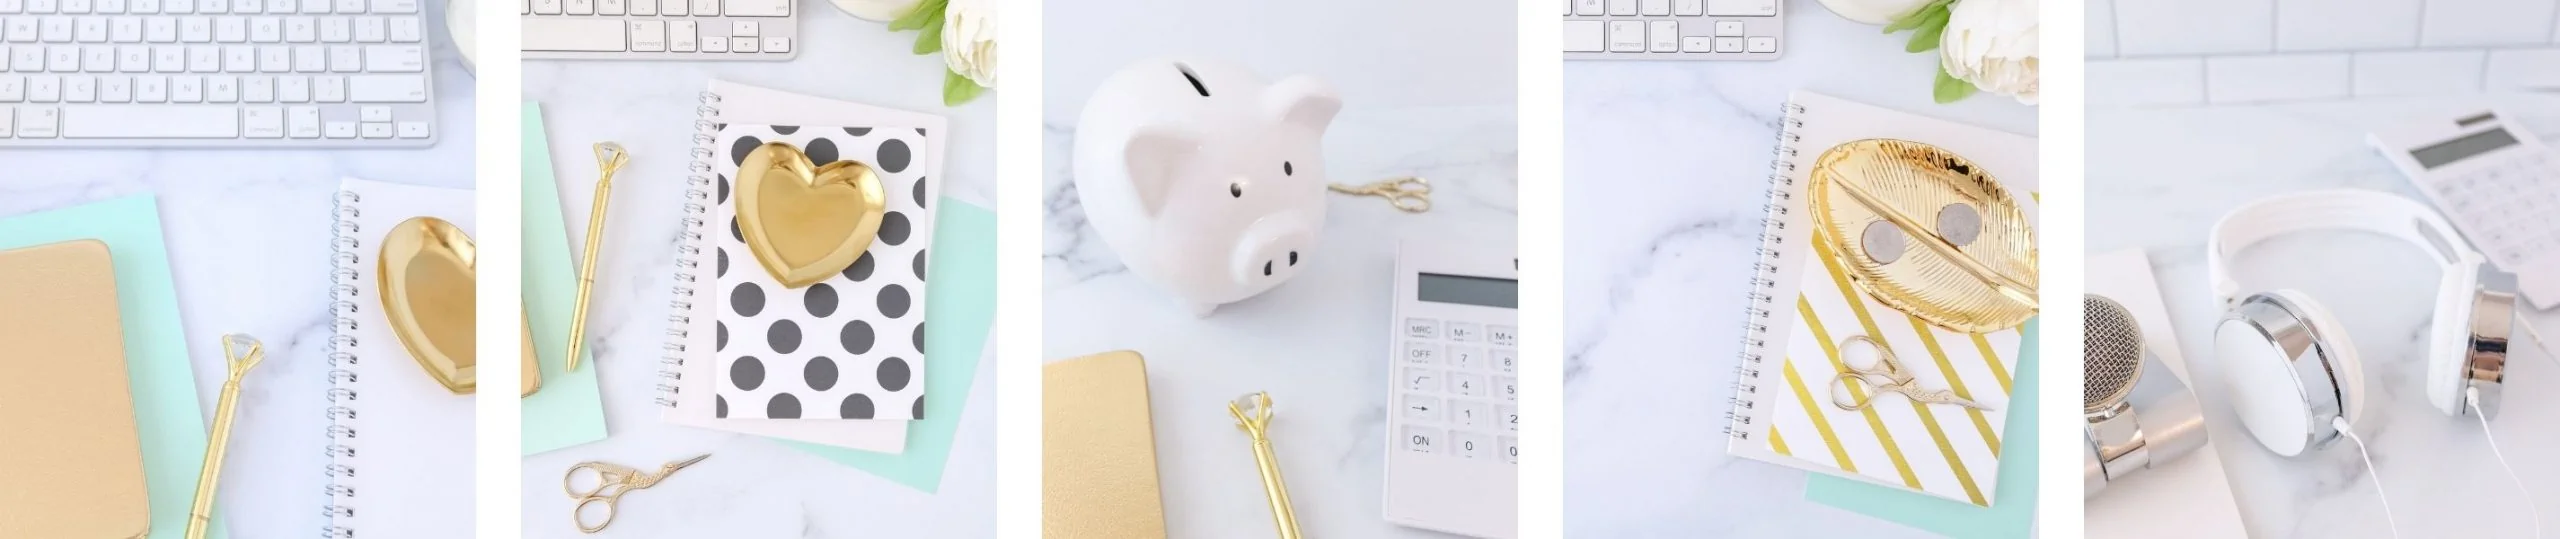 Piggy bank stock photo previews